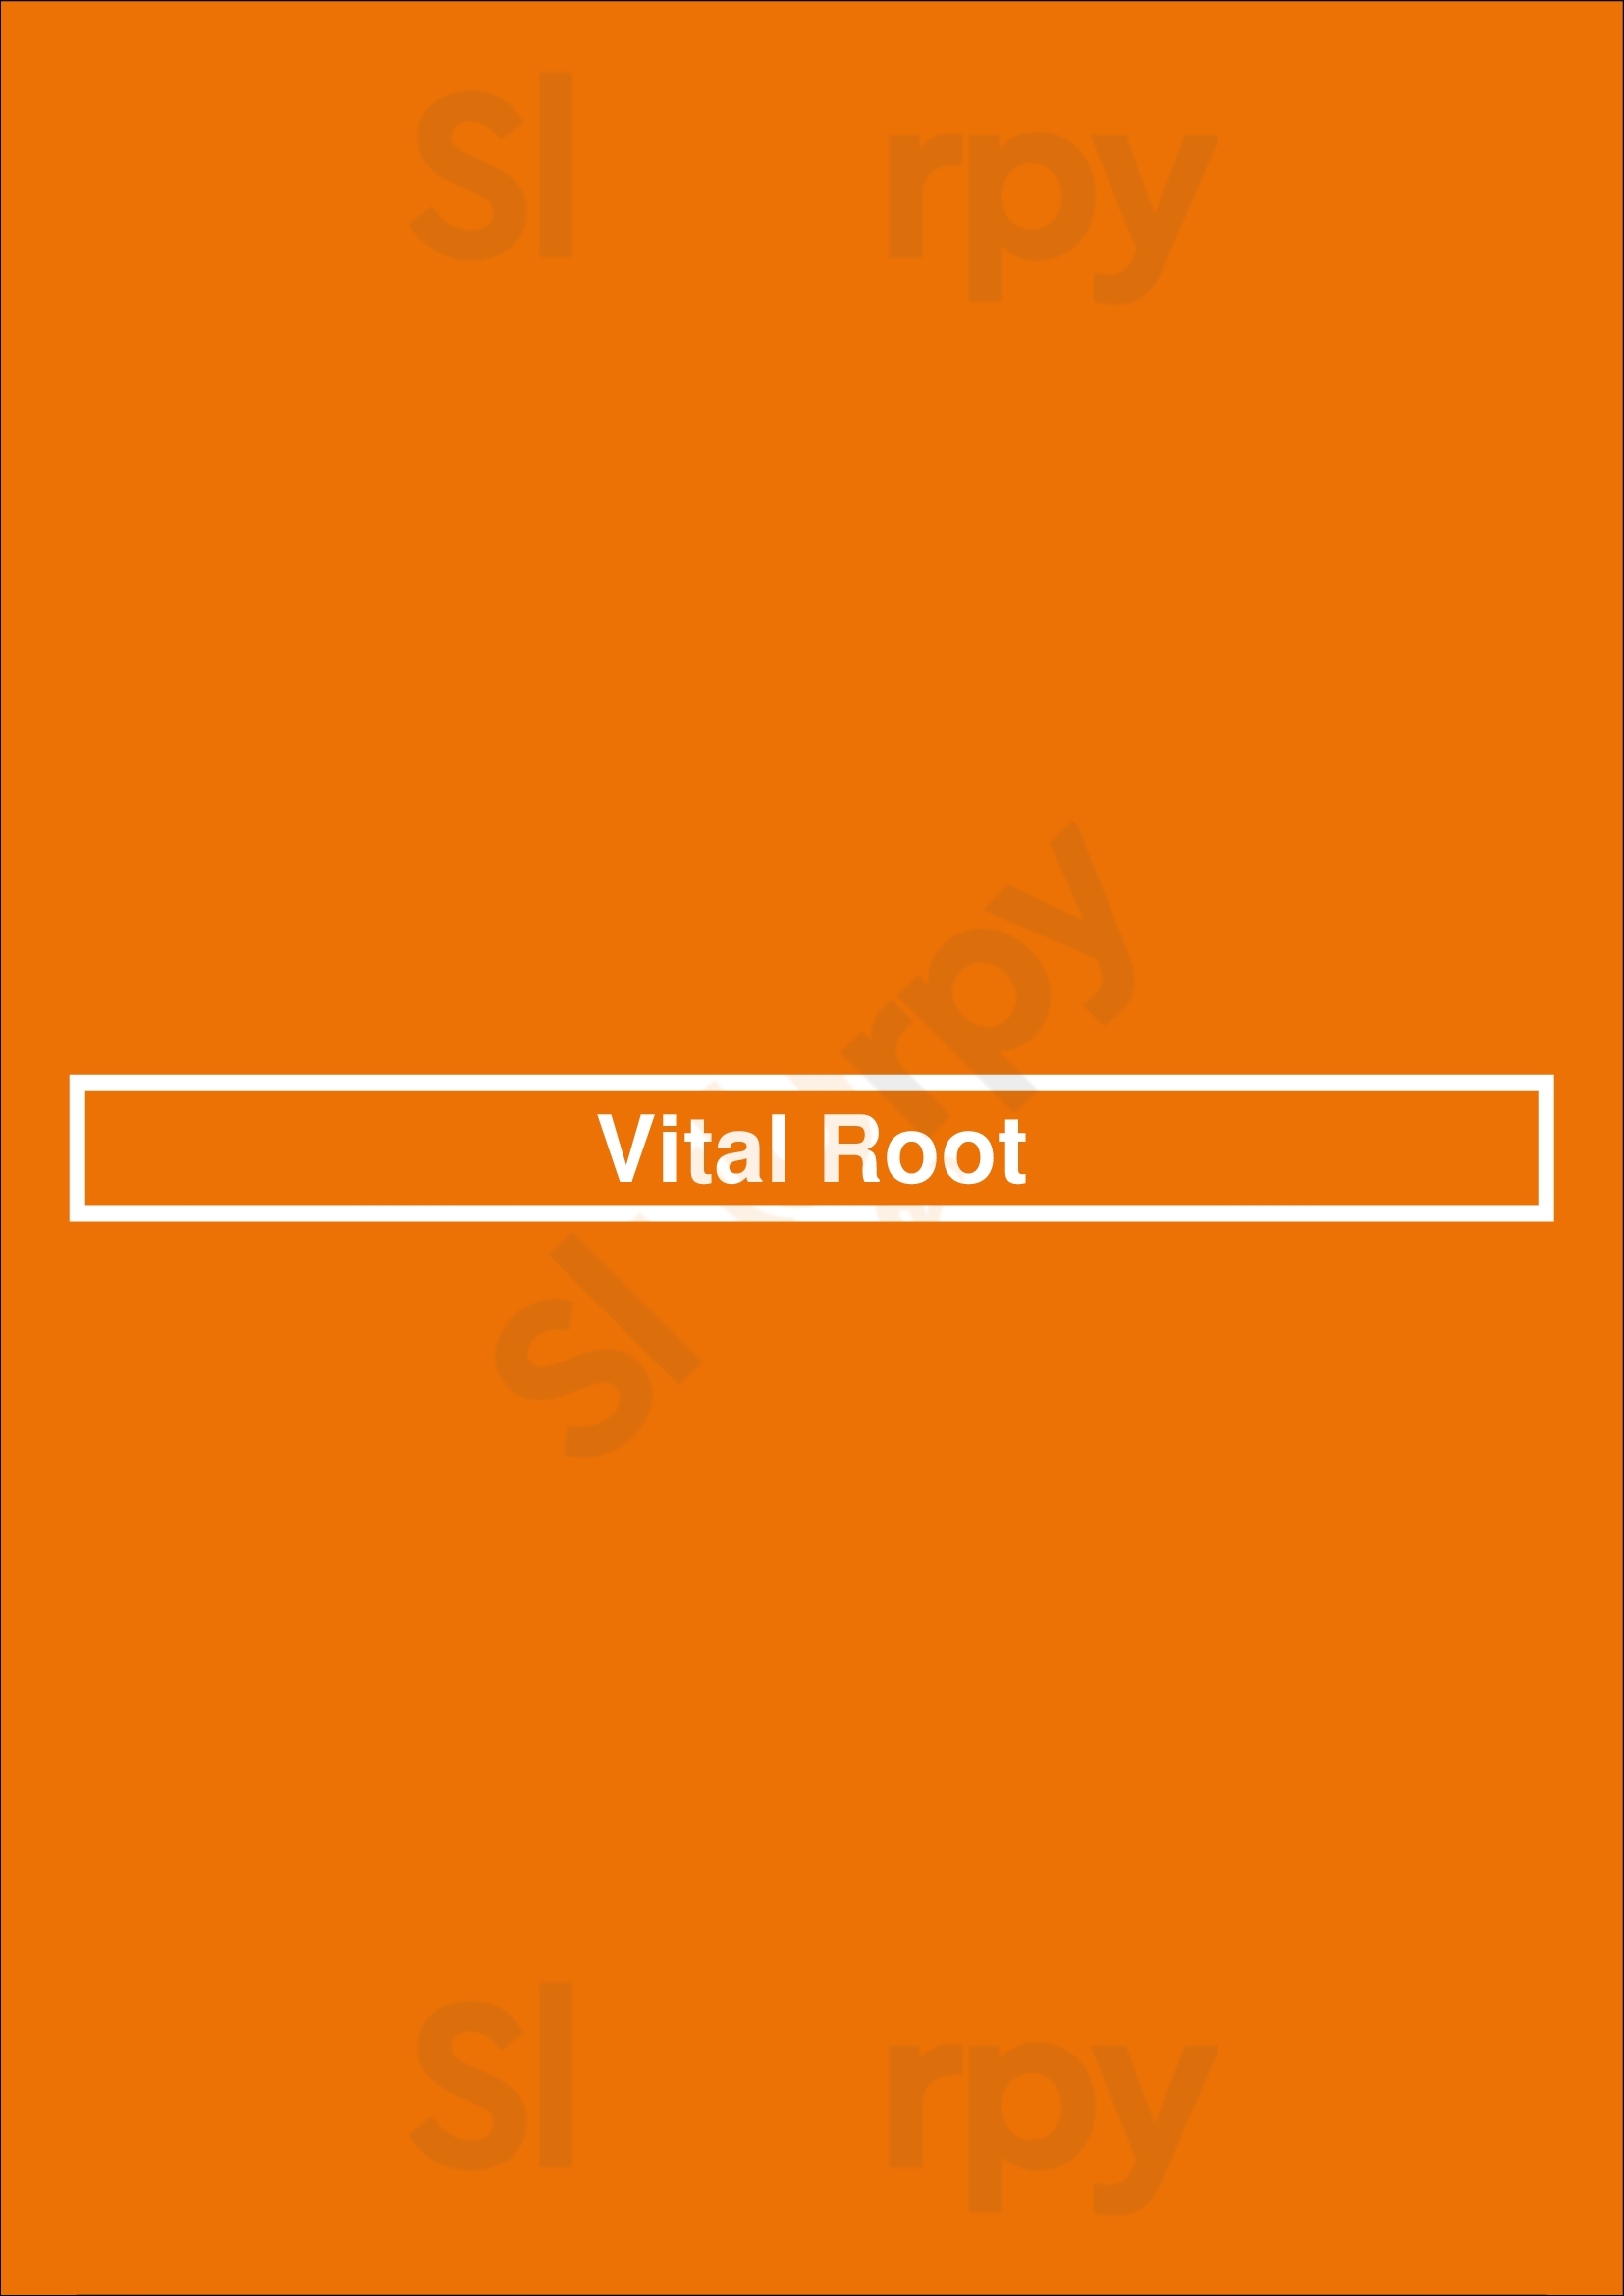 Vital Root Denver Menu - 1